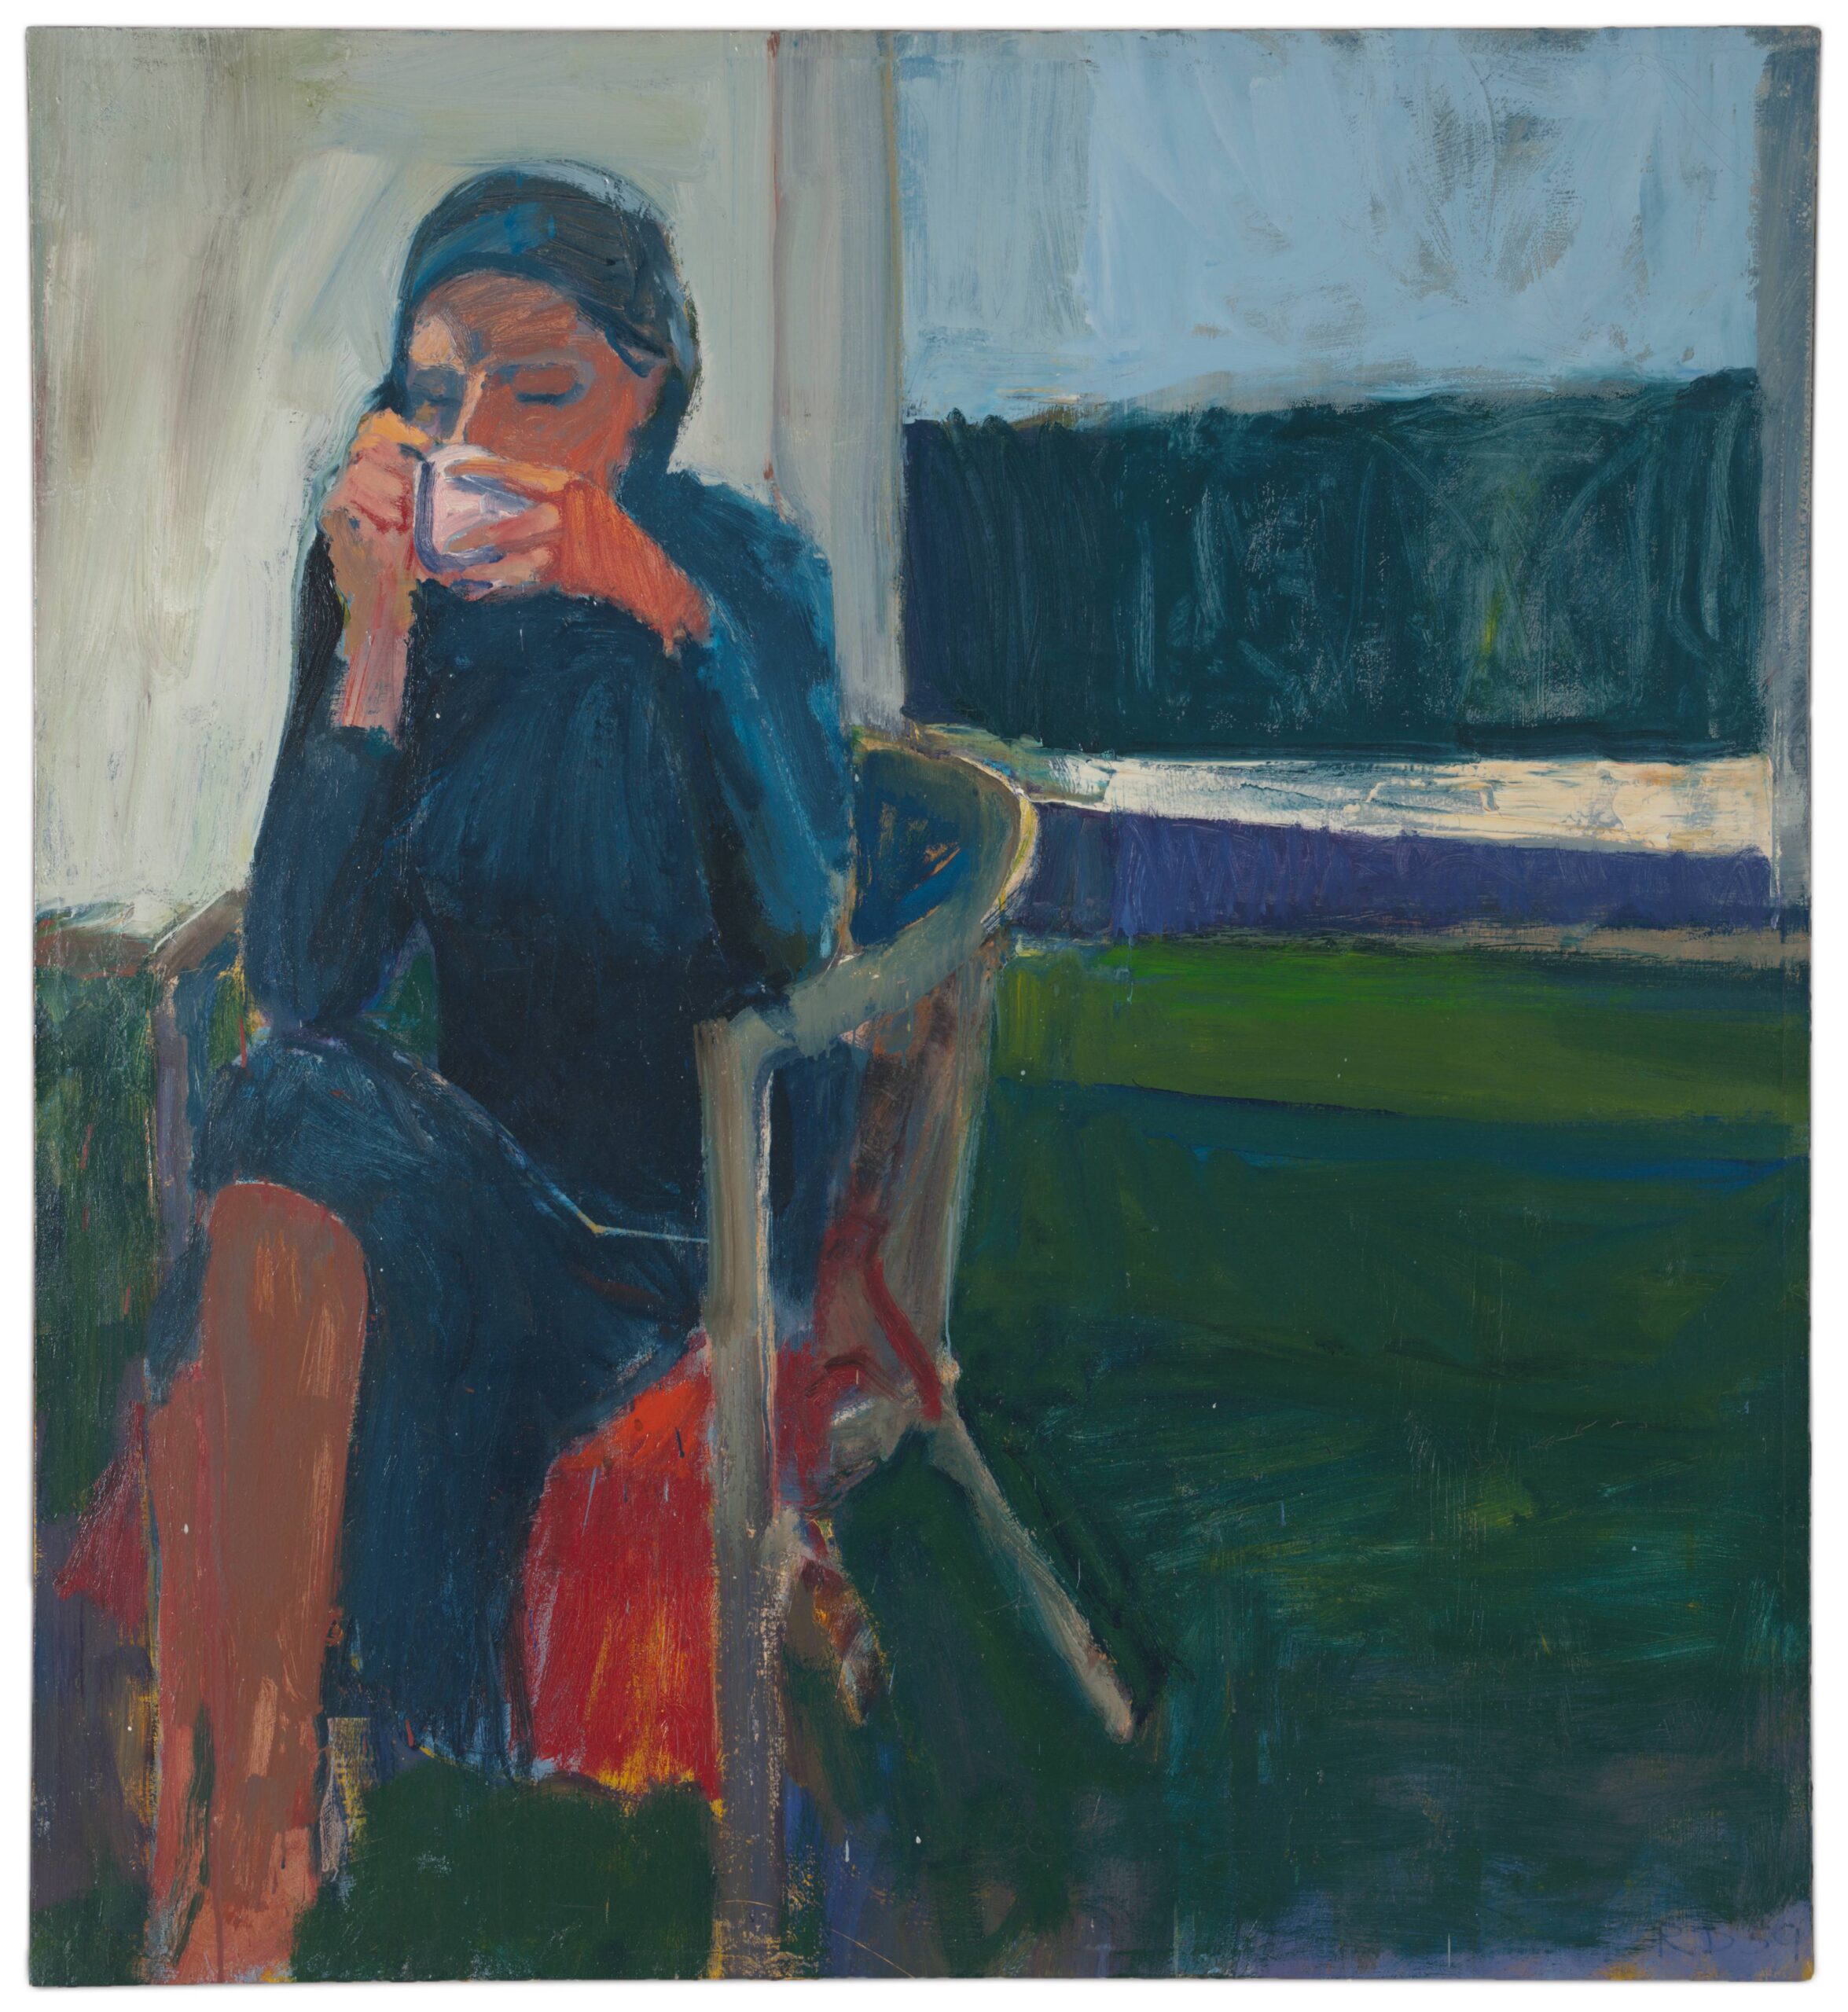 Coffee, 1959 - Richard Diebenkorn